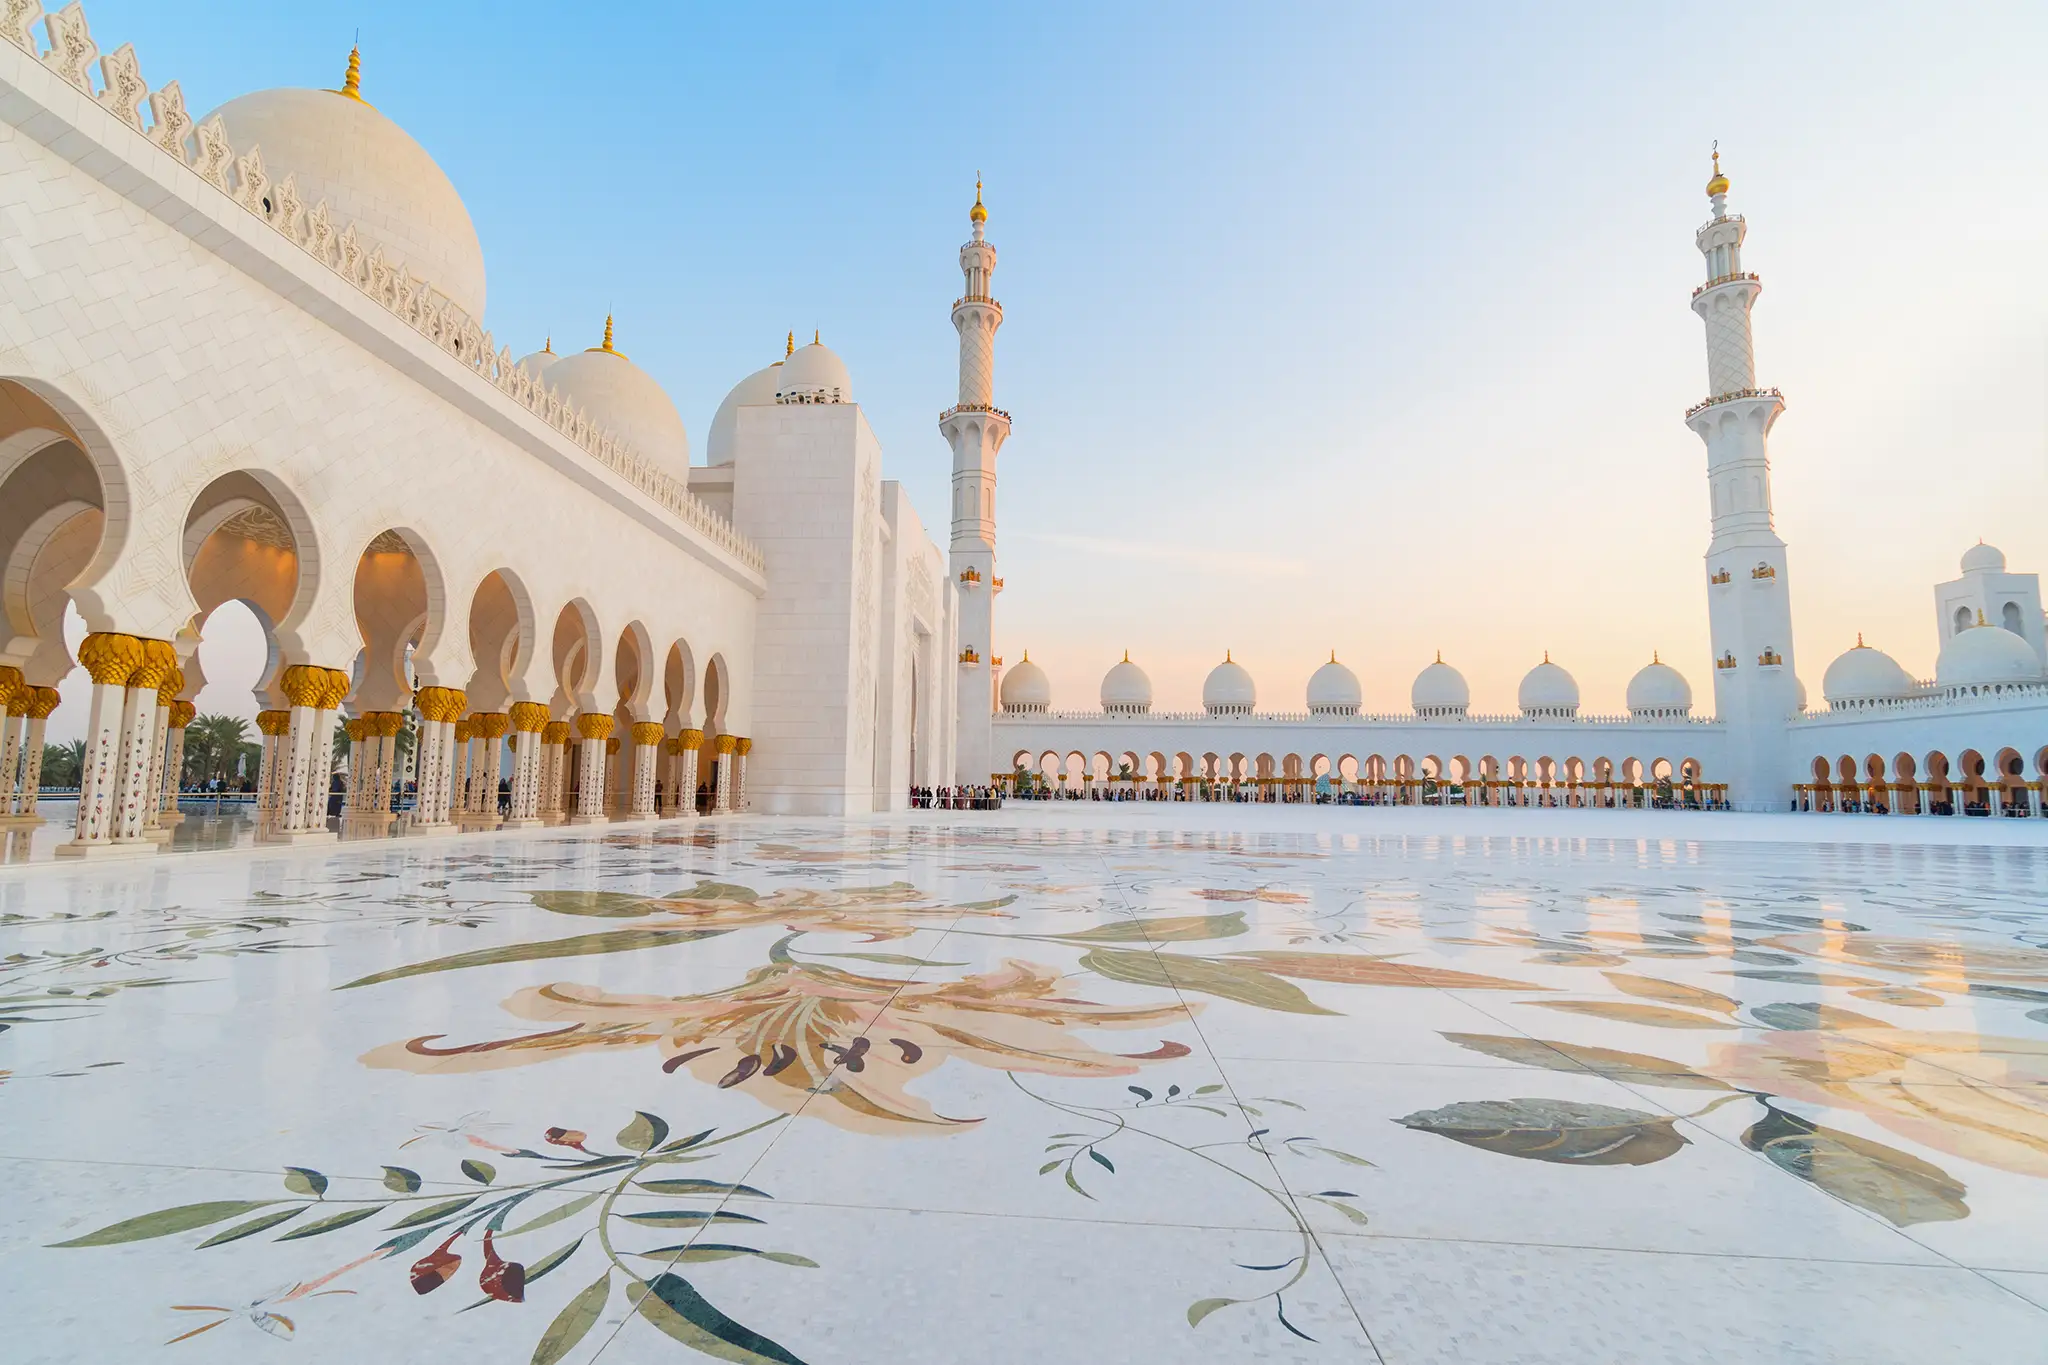 Panoramic view of Sheikh Zayed Grand Mosque, Abu Dhabi, United Arab Emirates.